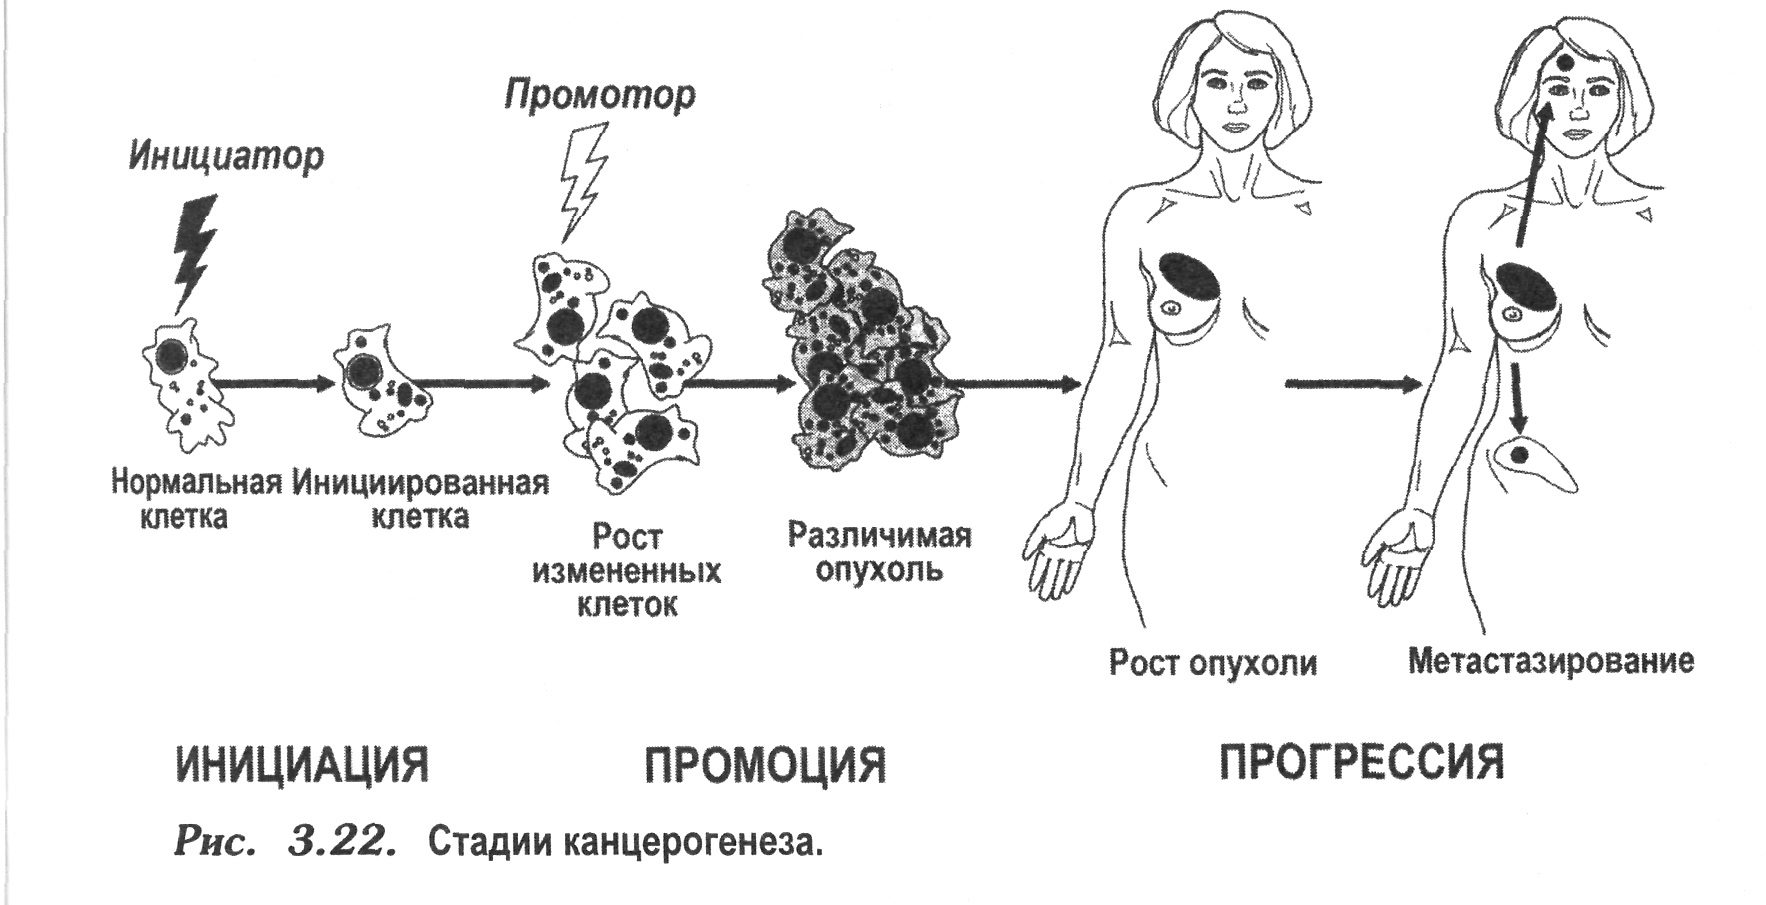 Процесс формирования опухоли